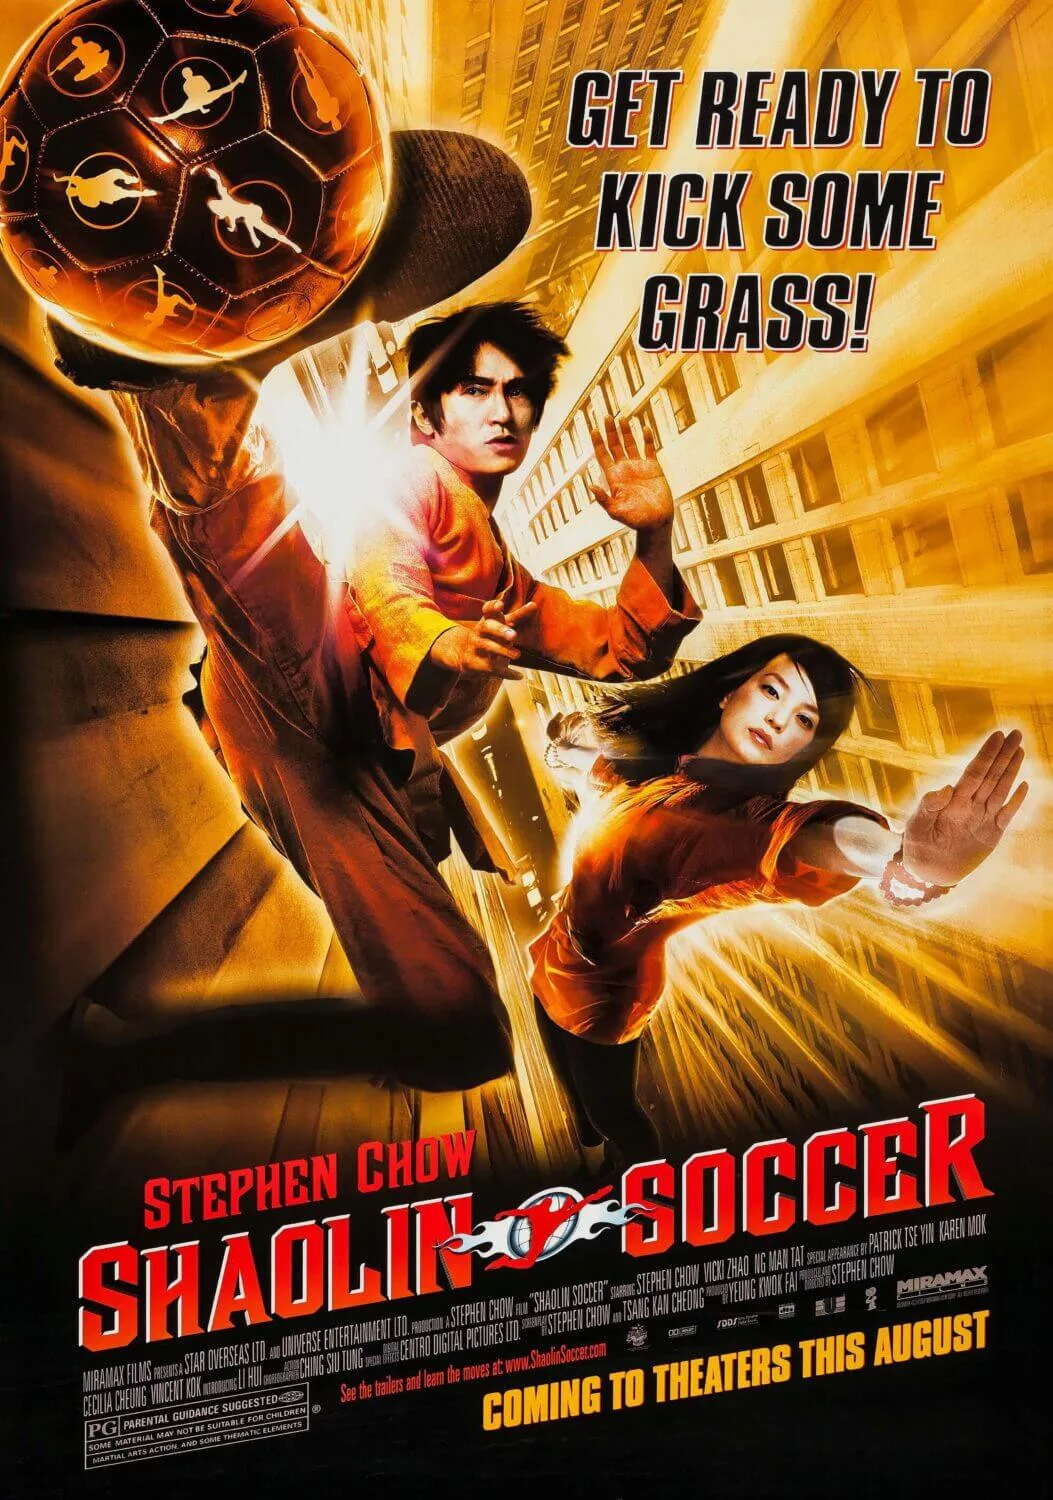 shaolin soccer movie poster